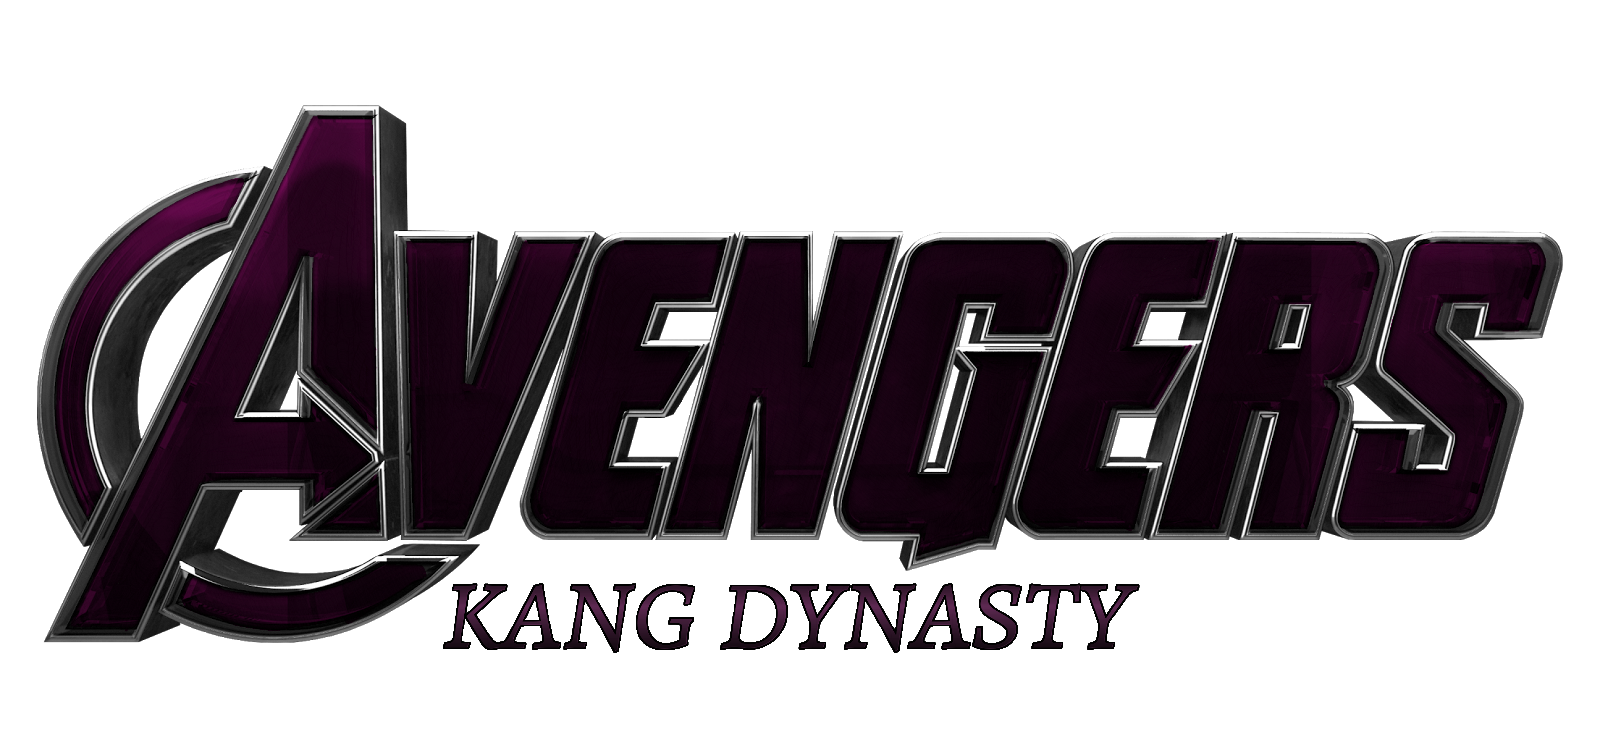 AVENGERS 5 THE KANG DYNASTY Teaser poster 2025 by Andrewvm on DeviantArt